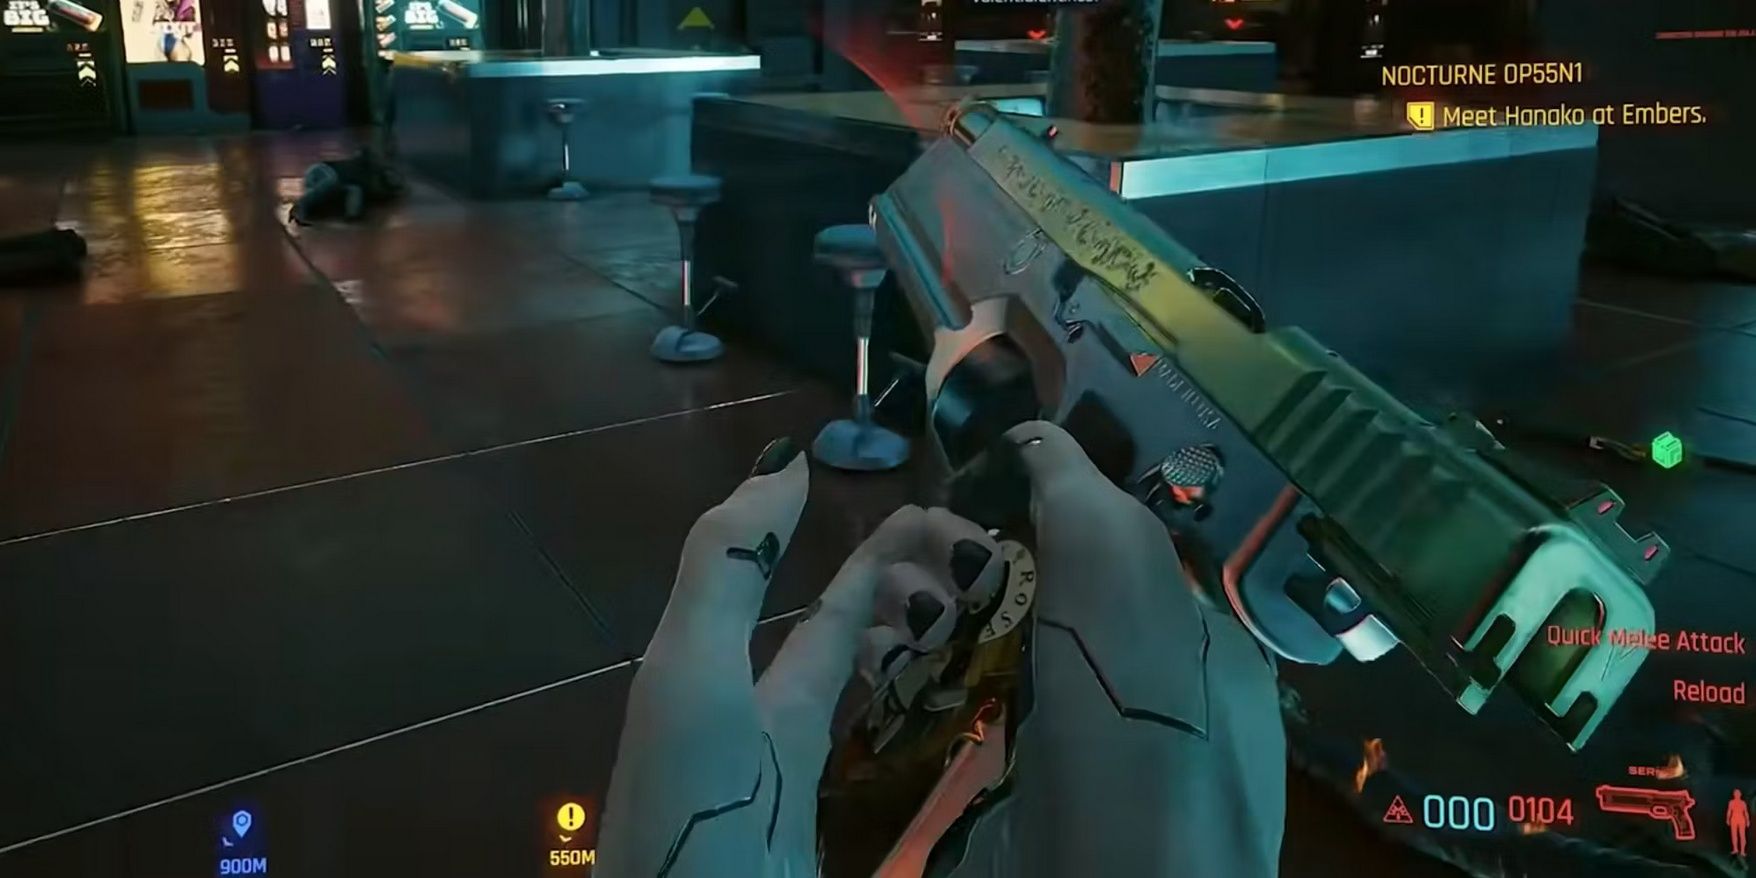 Seraph pistol in Cyberpunk 2077